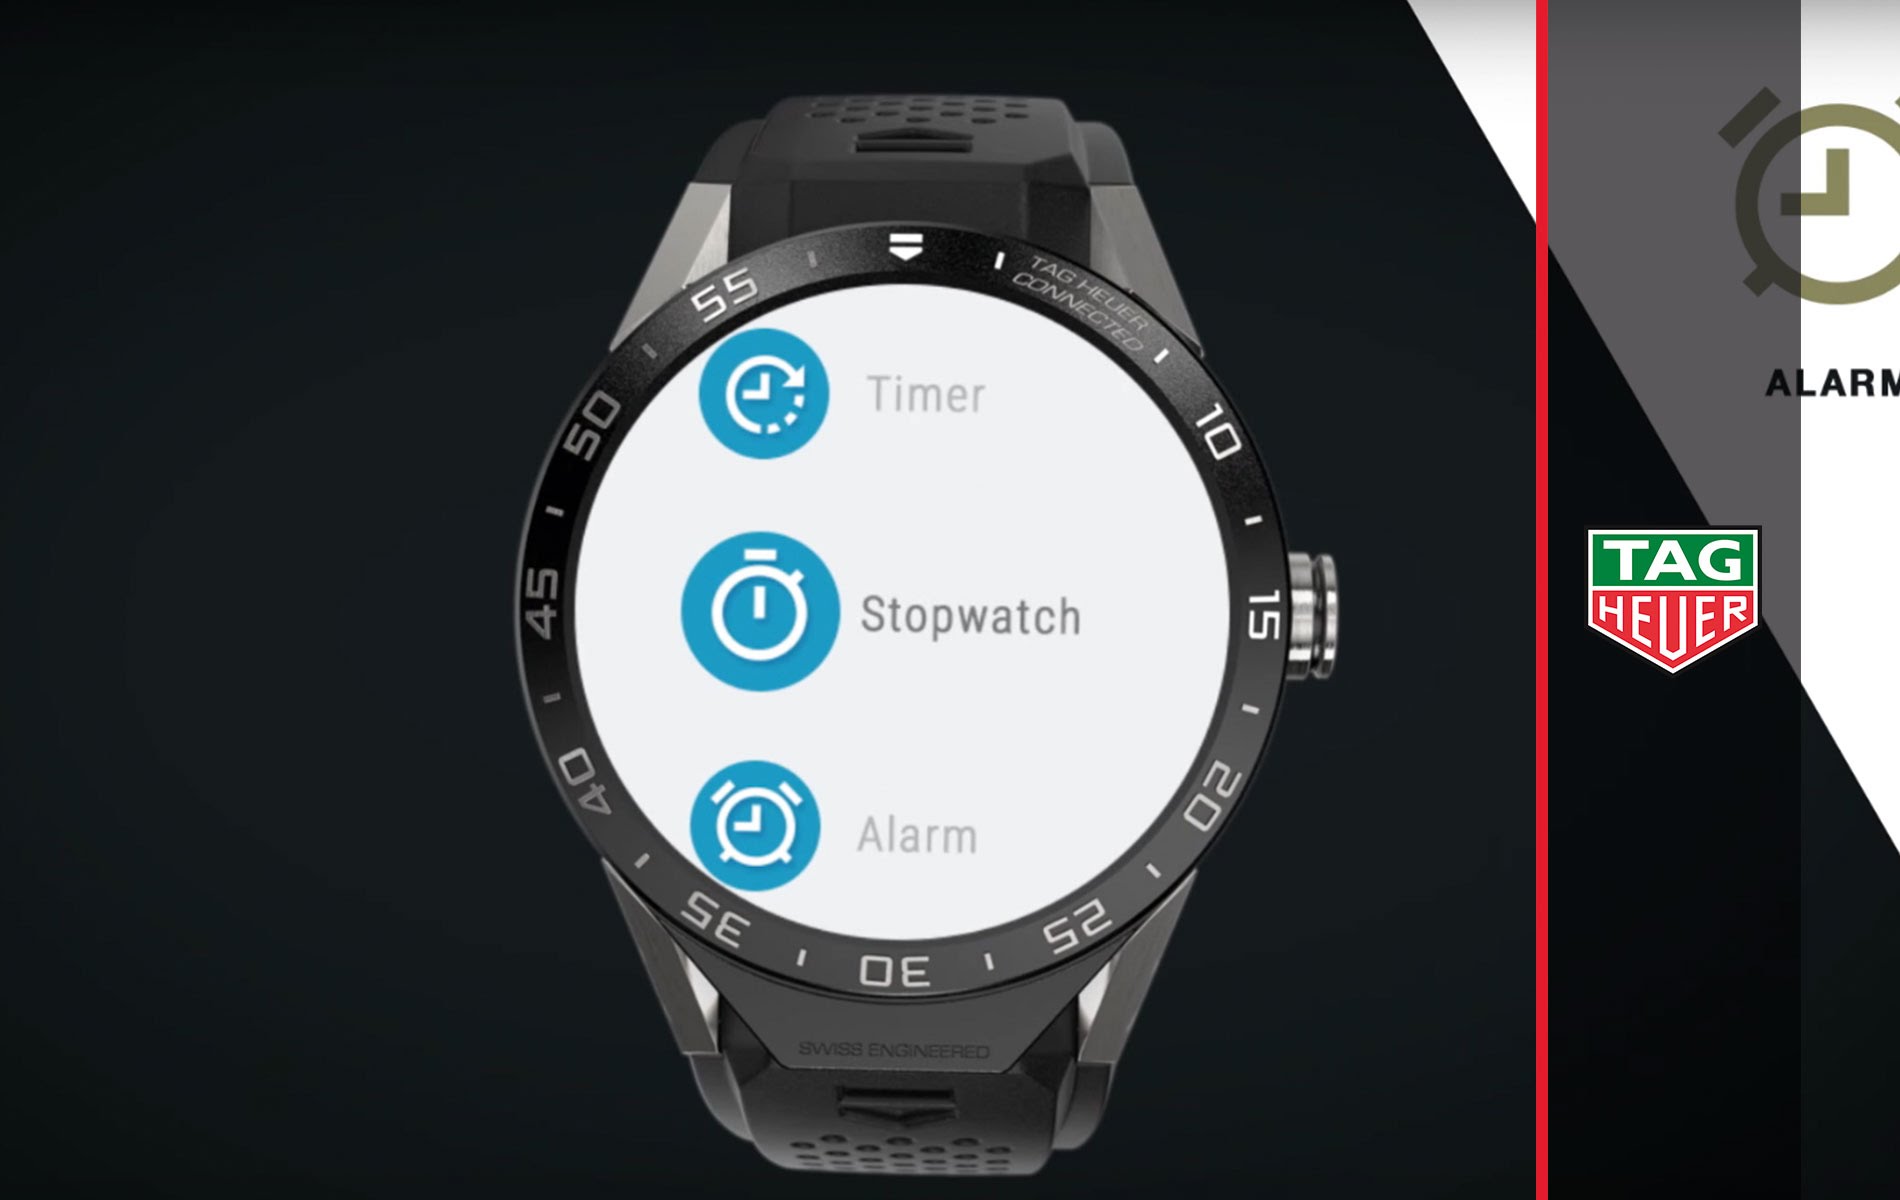 豪雅Connected Watch采用了Android wear操作系统